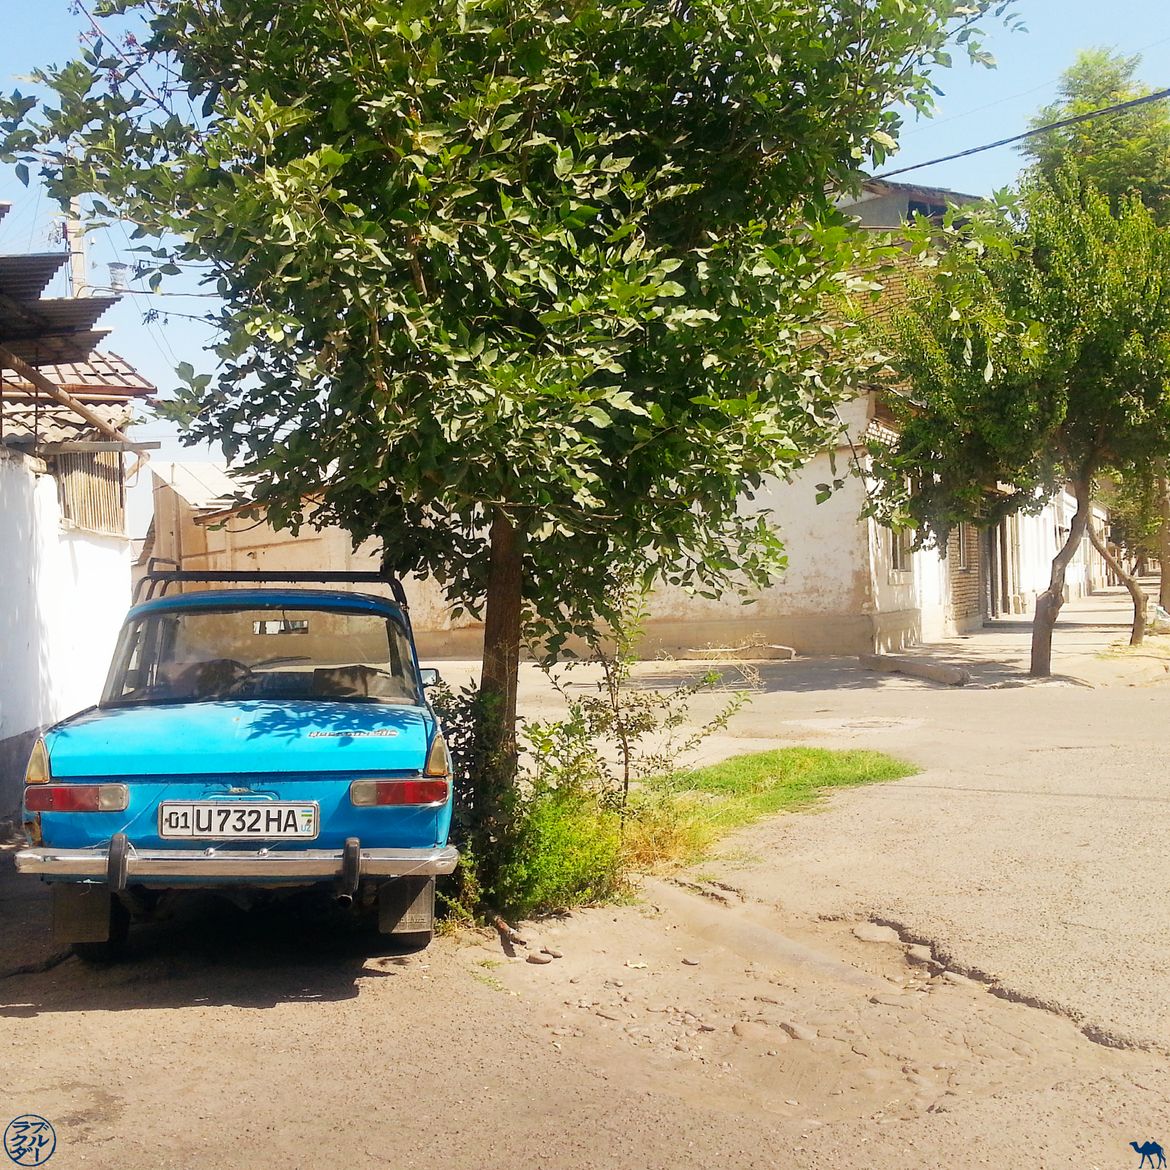 Le Chameau Bleu - Blog Voyage Ouzbékistan - Voiture Ouzbek vintage Ouzbékistan Asie Centrale